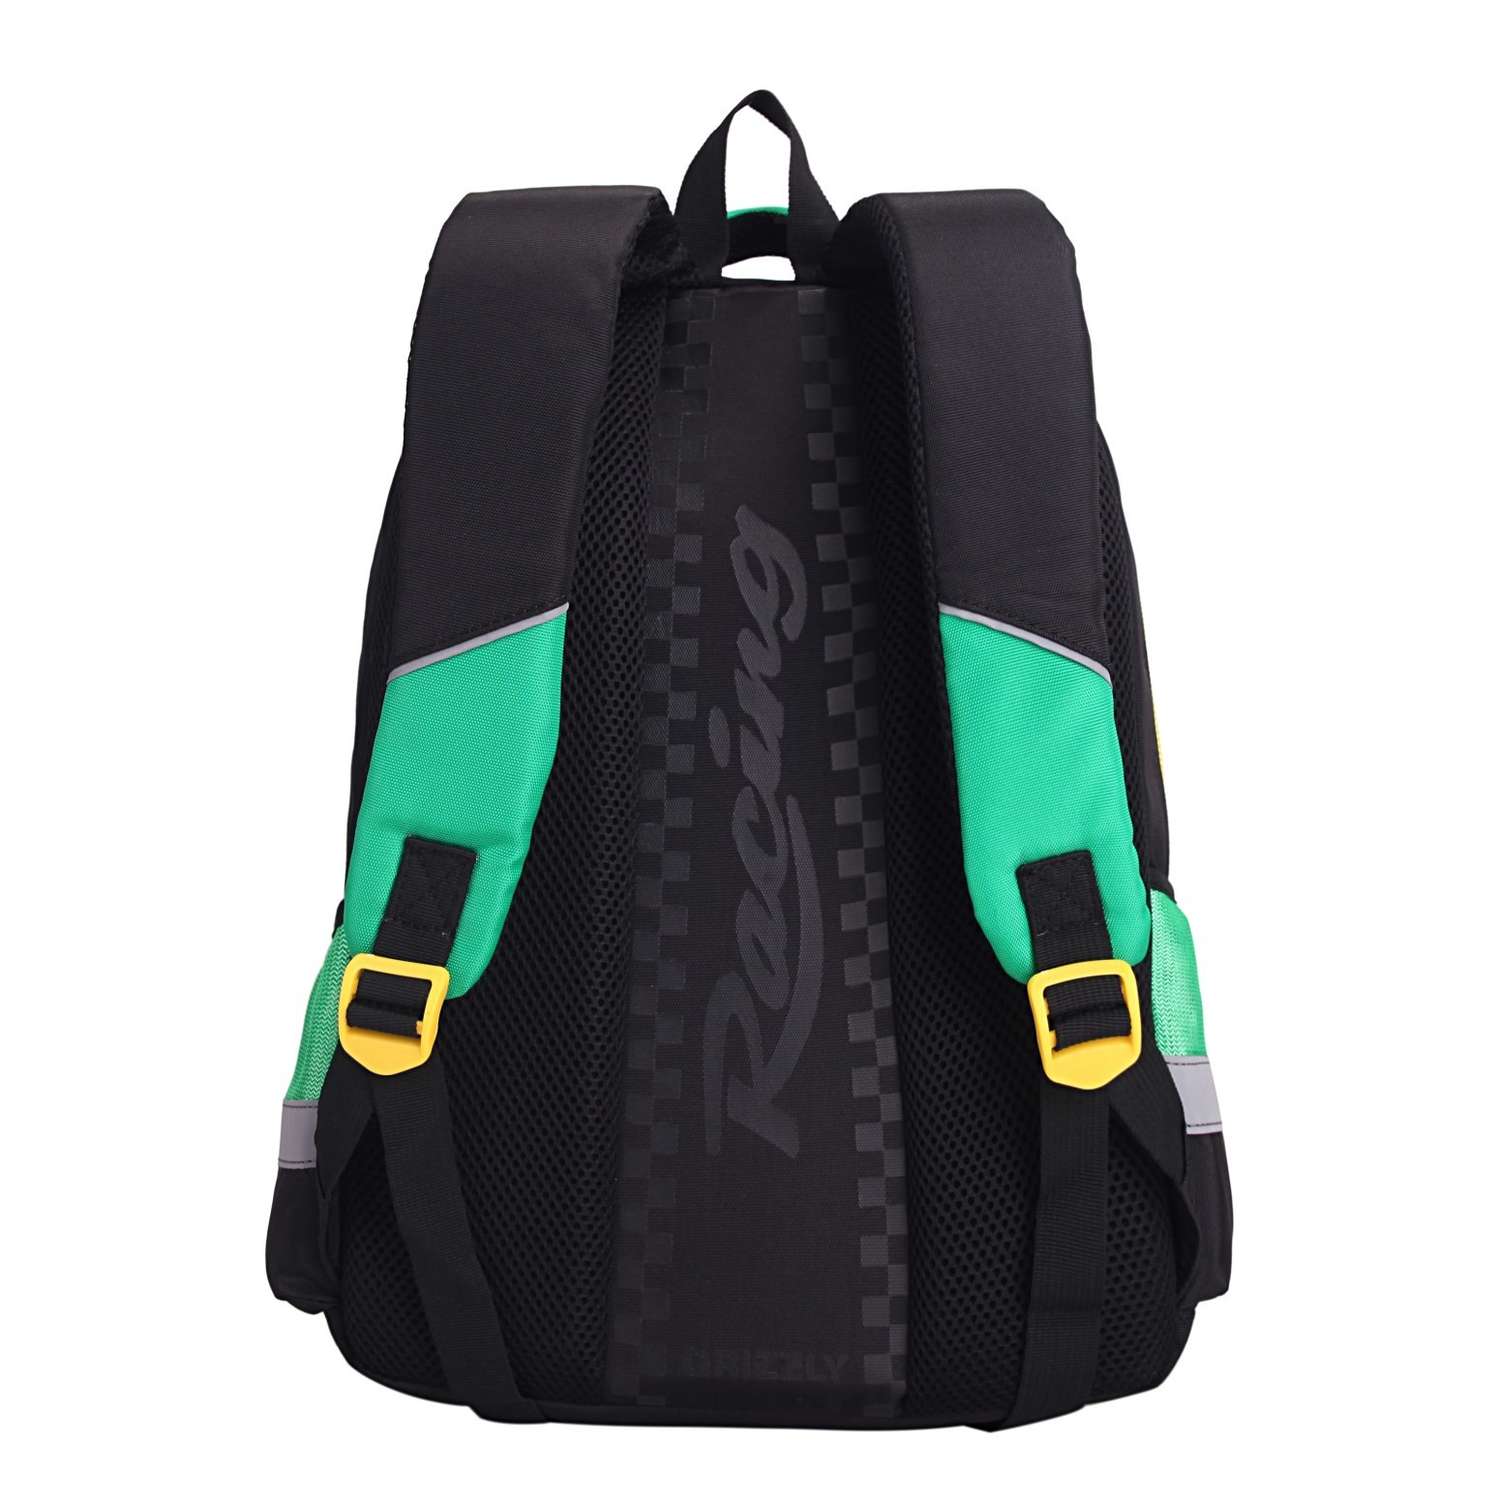 Рюкзак школьный Grizzly Гонка Черный-Зеленый RB-860-5/3 - фото 3